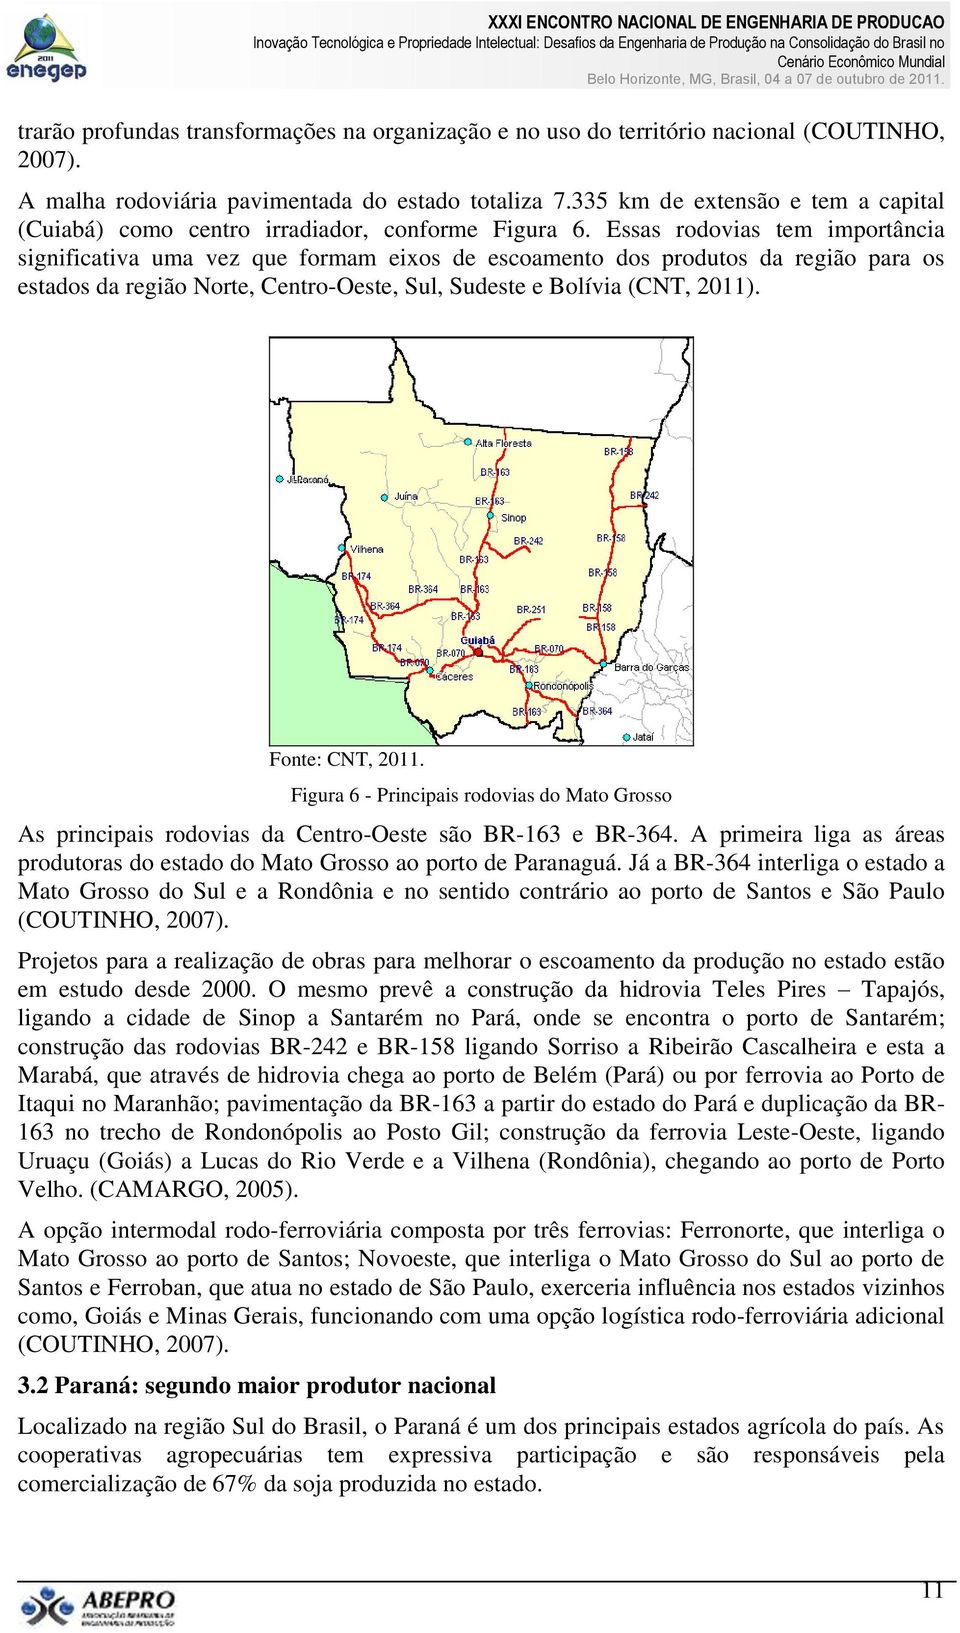 Essas rodovias tem importância significativa uma vez que formam eixos de escoamento dos produtos da região para os estados da região Norte, Centro-Oeste, Sul, Sudeste e Bolívia (CNT, 2011).